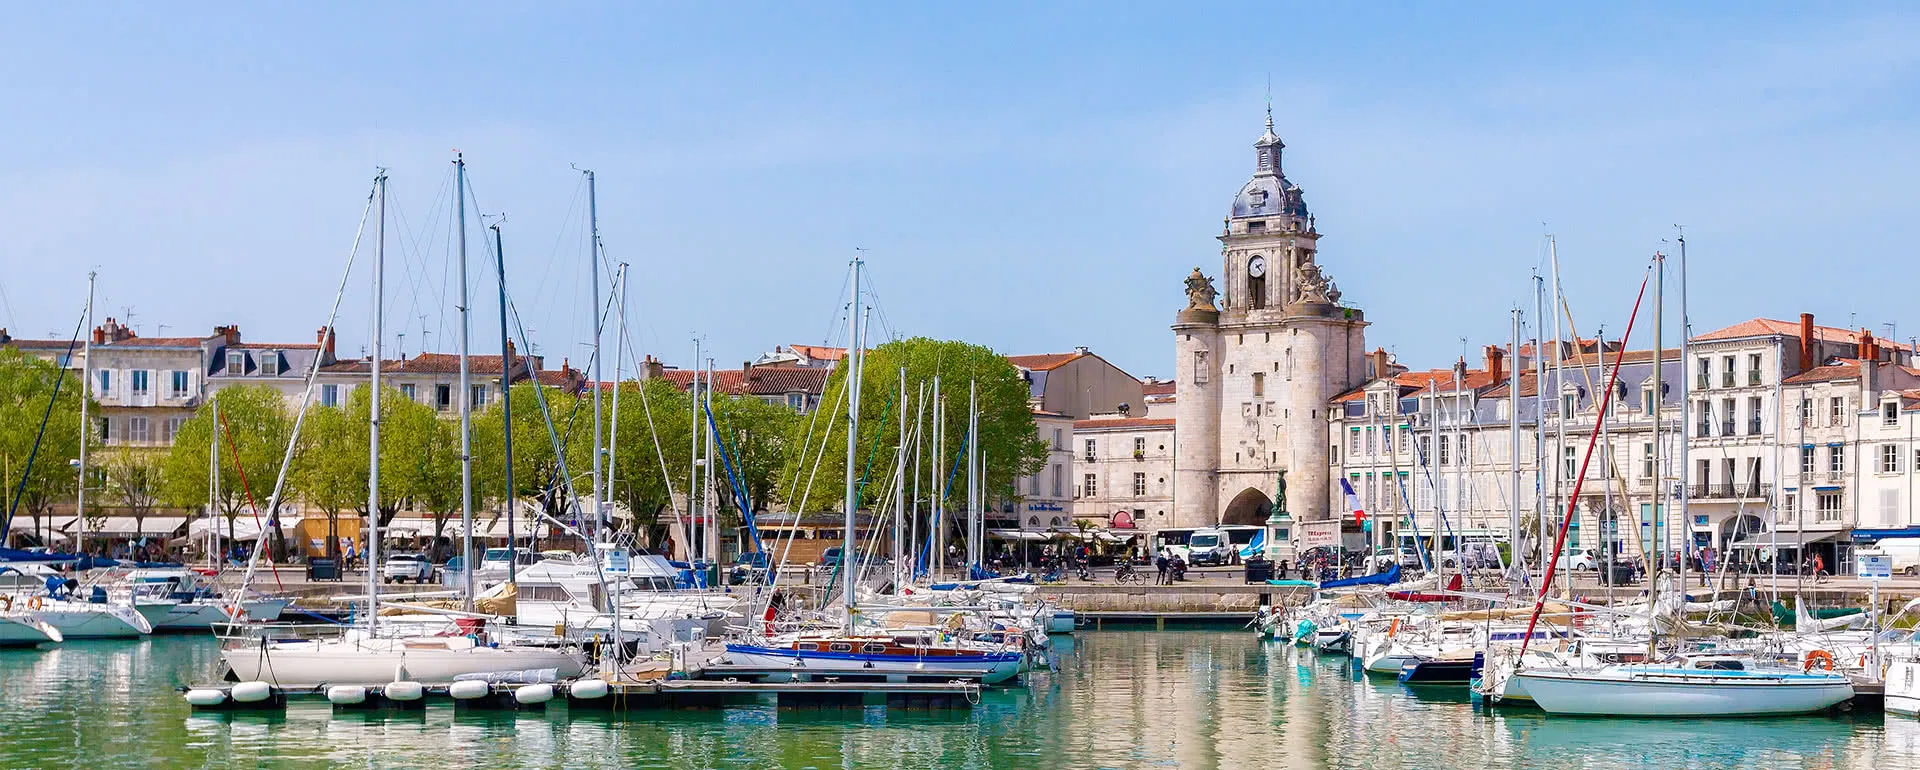 La Rochelle - the destination for school trips